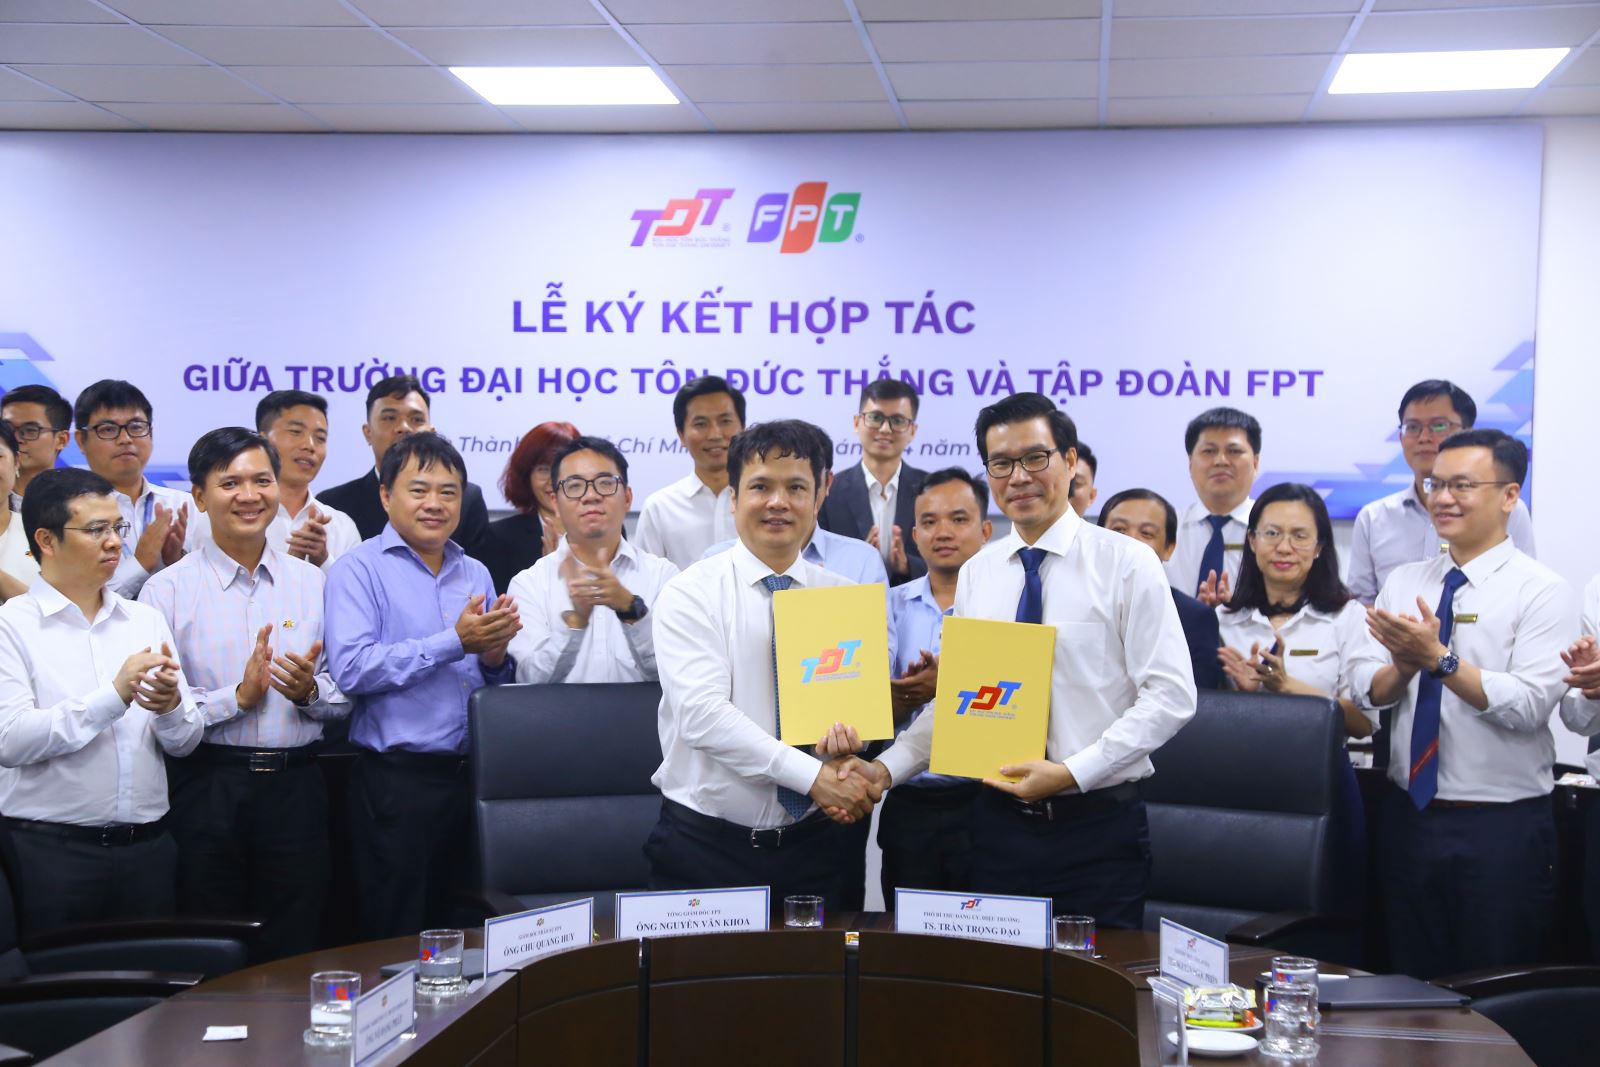 Toàn cảnh lễ ký kết hợp tác giữa trường Đại học Tôn Đức Thắng. và Tập đoàn FPT.